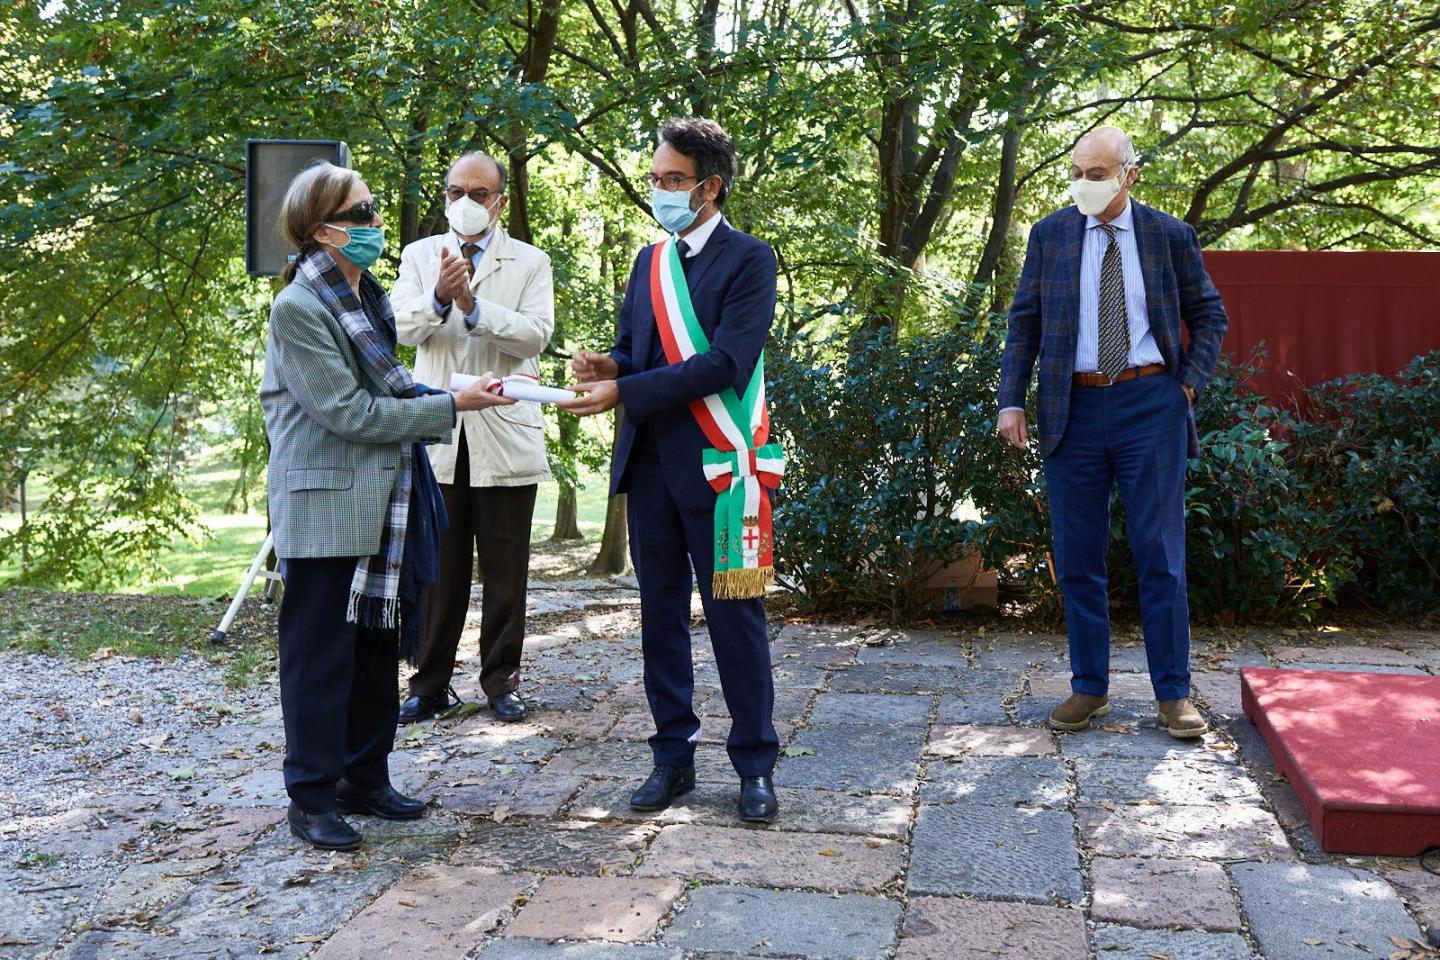 Giancarla Tagliabue collects the parchment for Carlo Tagliabue